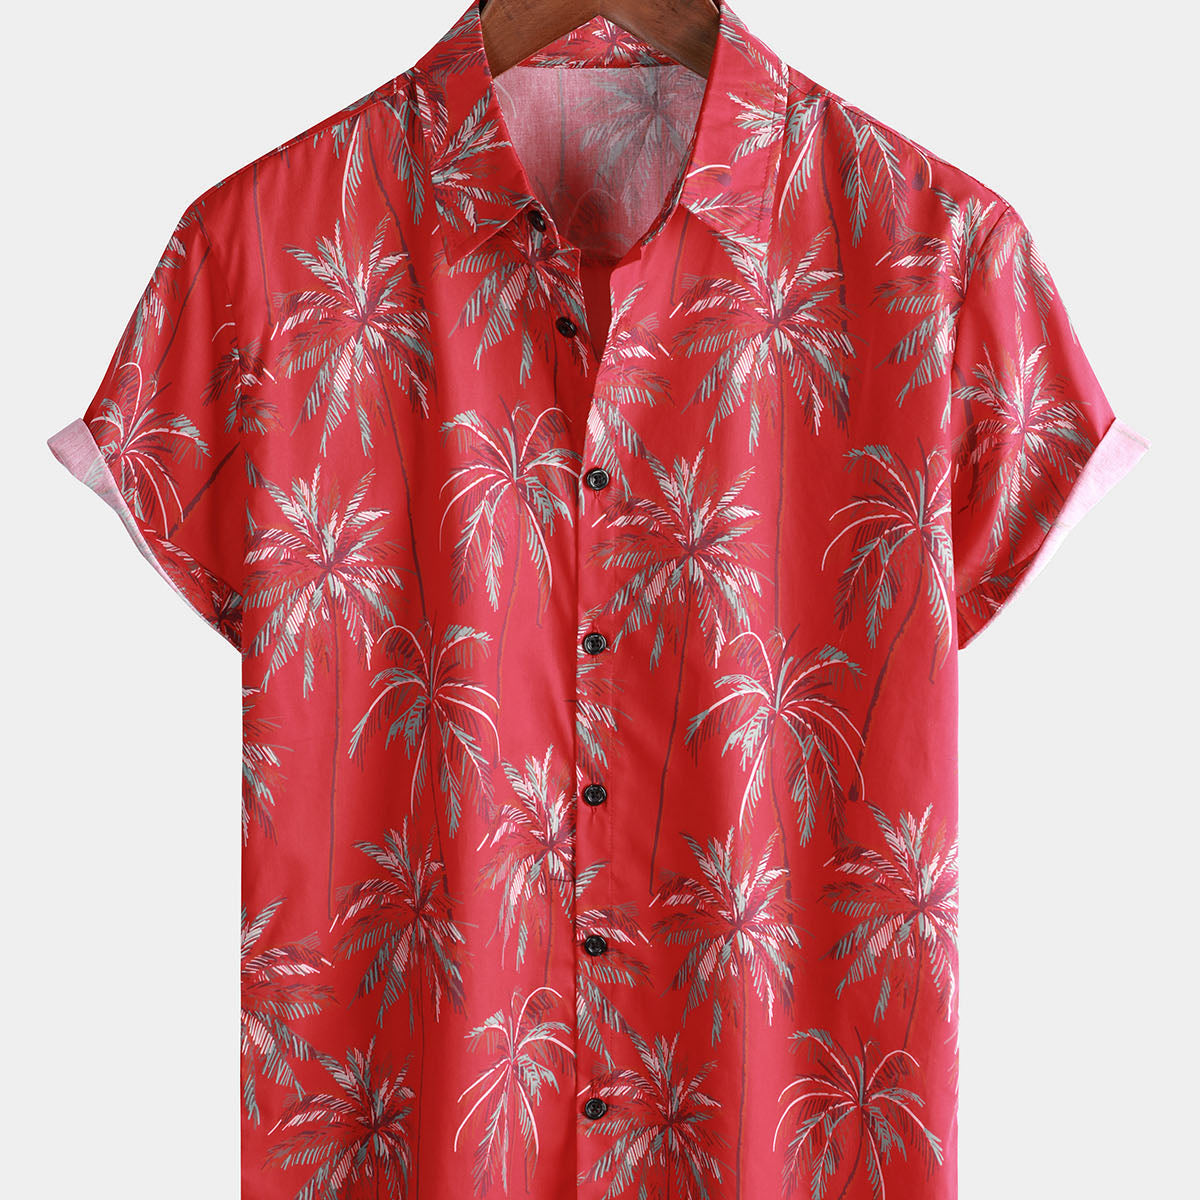 Camisa de manga corta para hombre de algodón rojo hawaiano tropical palmera casual playa verano planta vacaciones